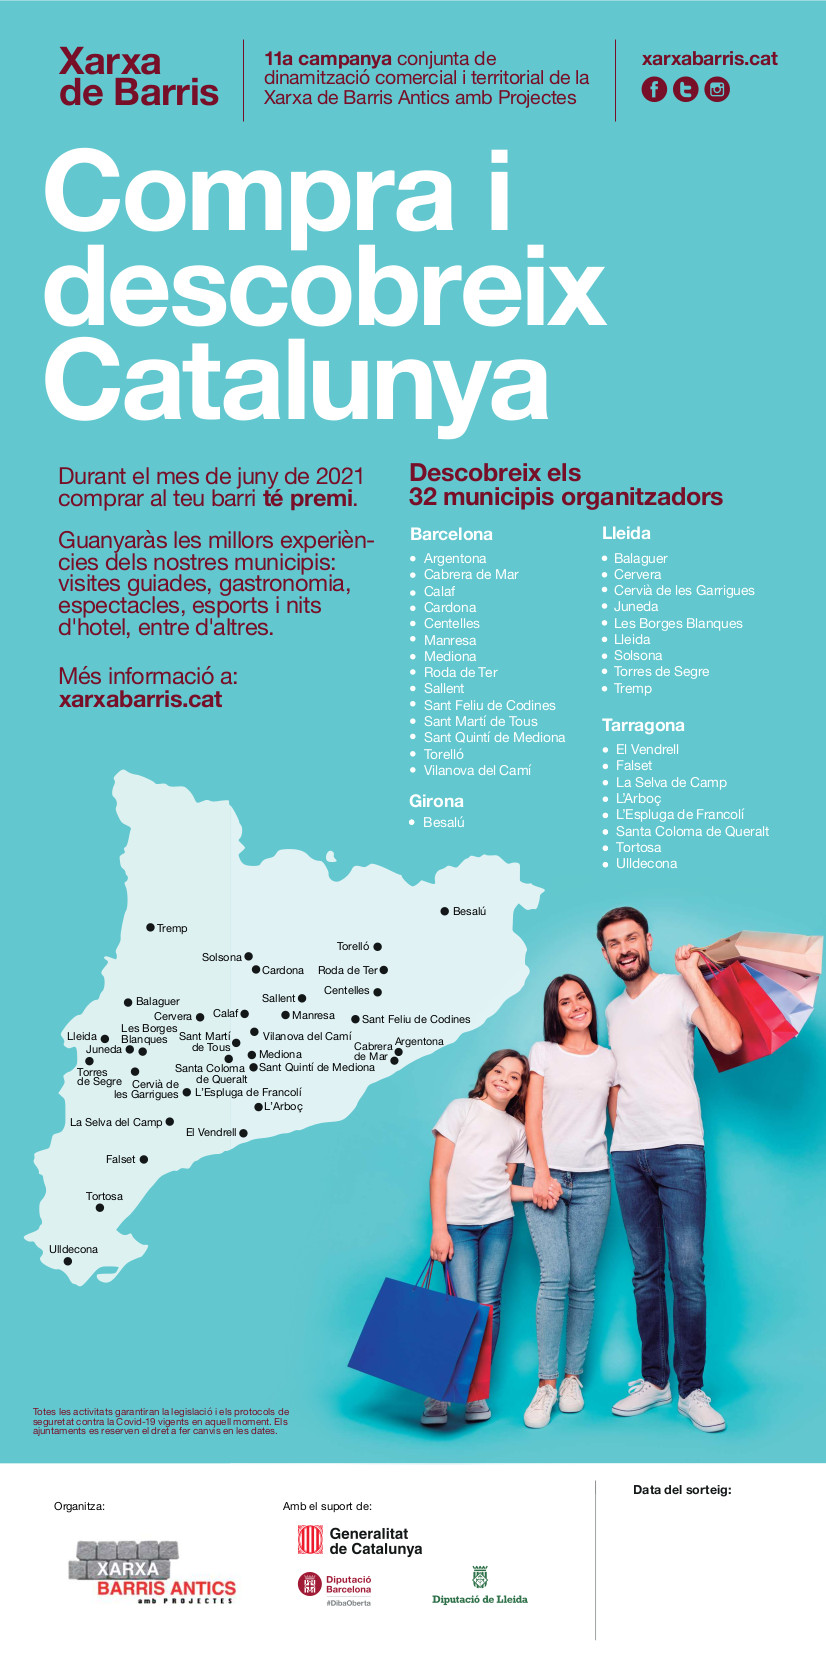 El cartell de la 11ª campanya conjunta de dinamització comercial dels municipis de la xarxa de Barris Antics amb Projectes 